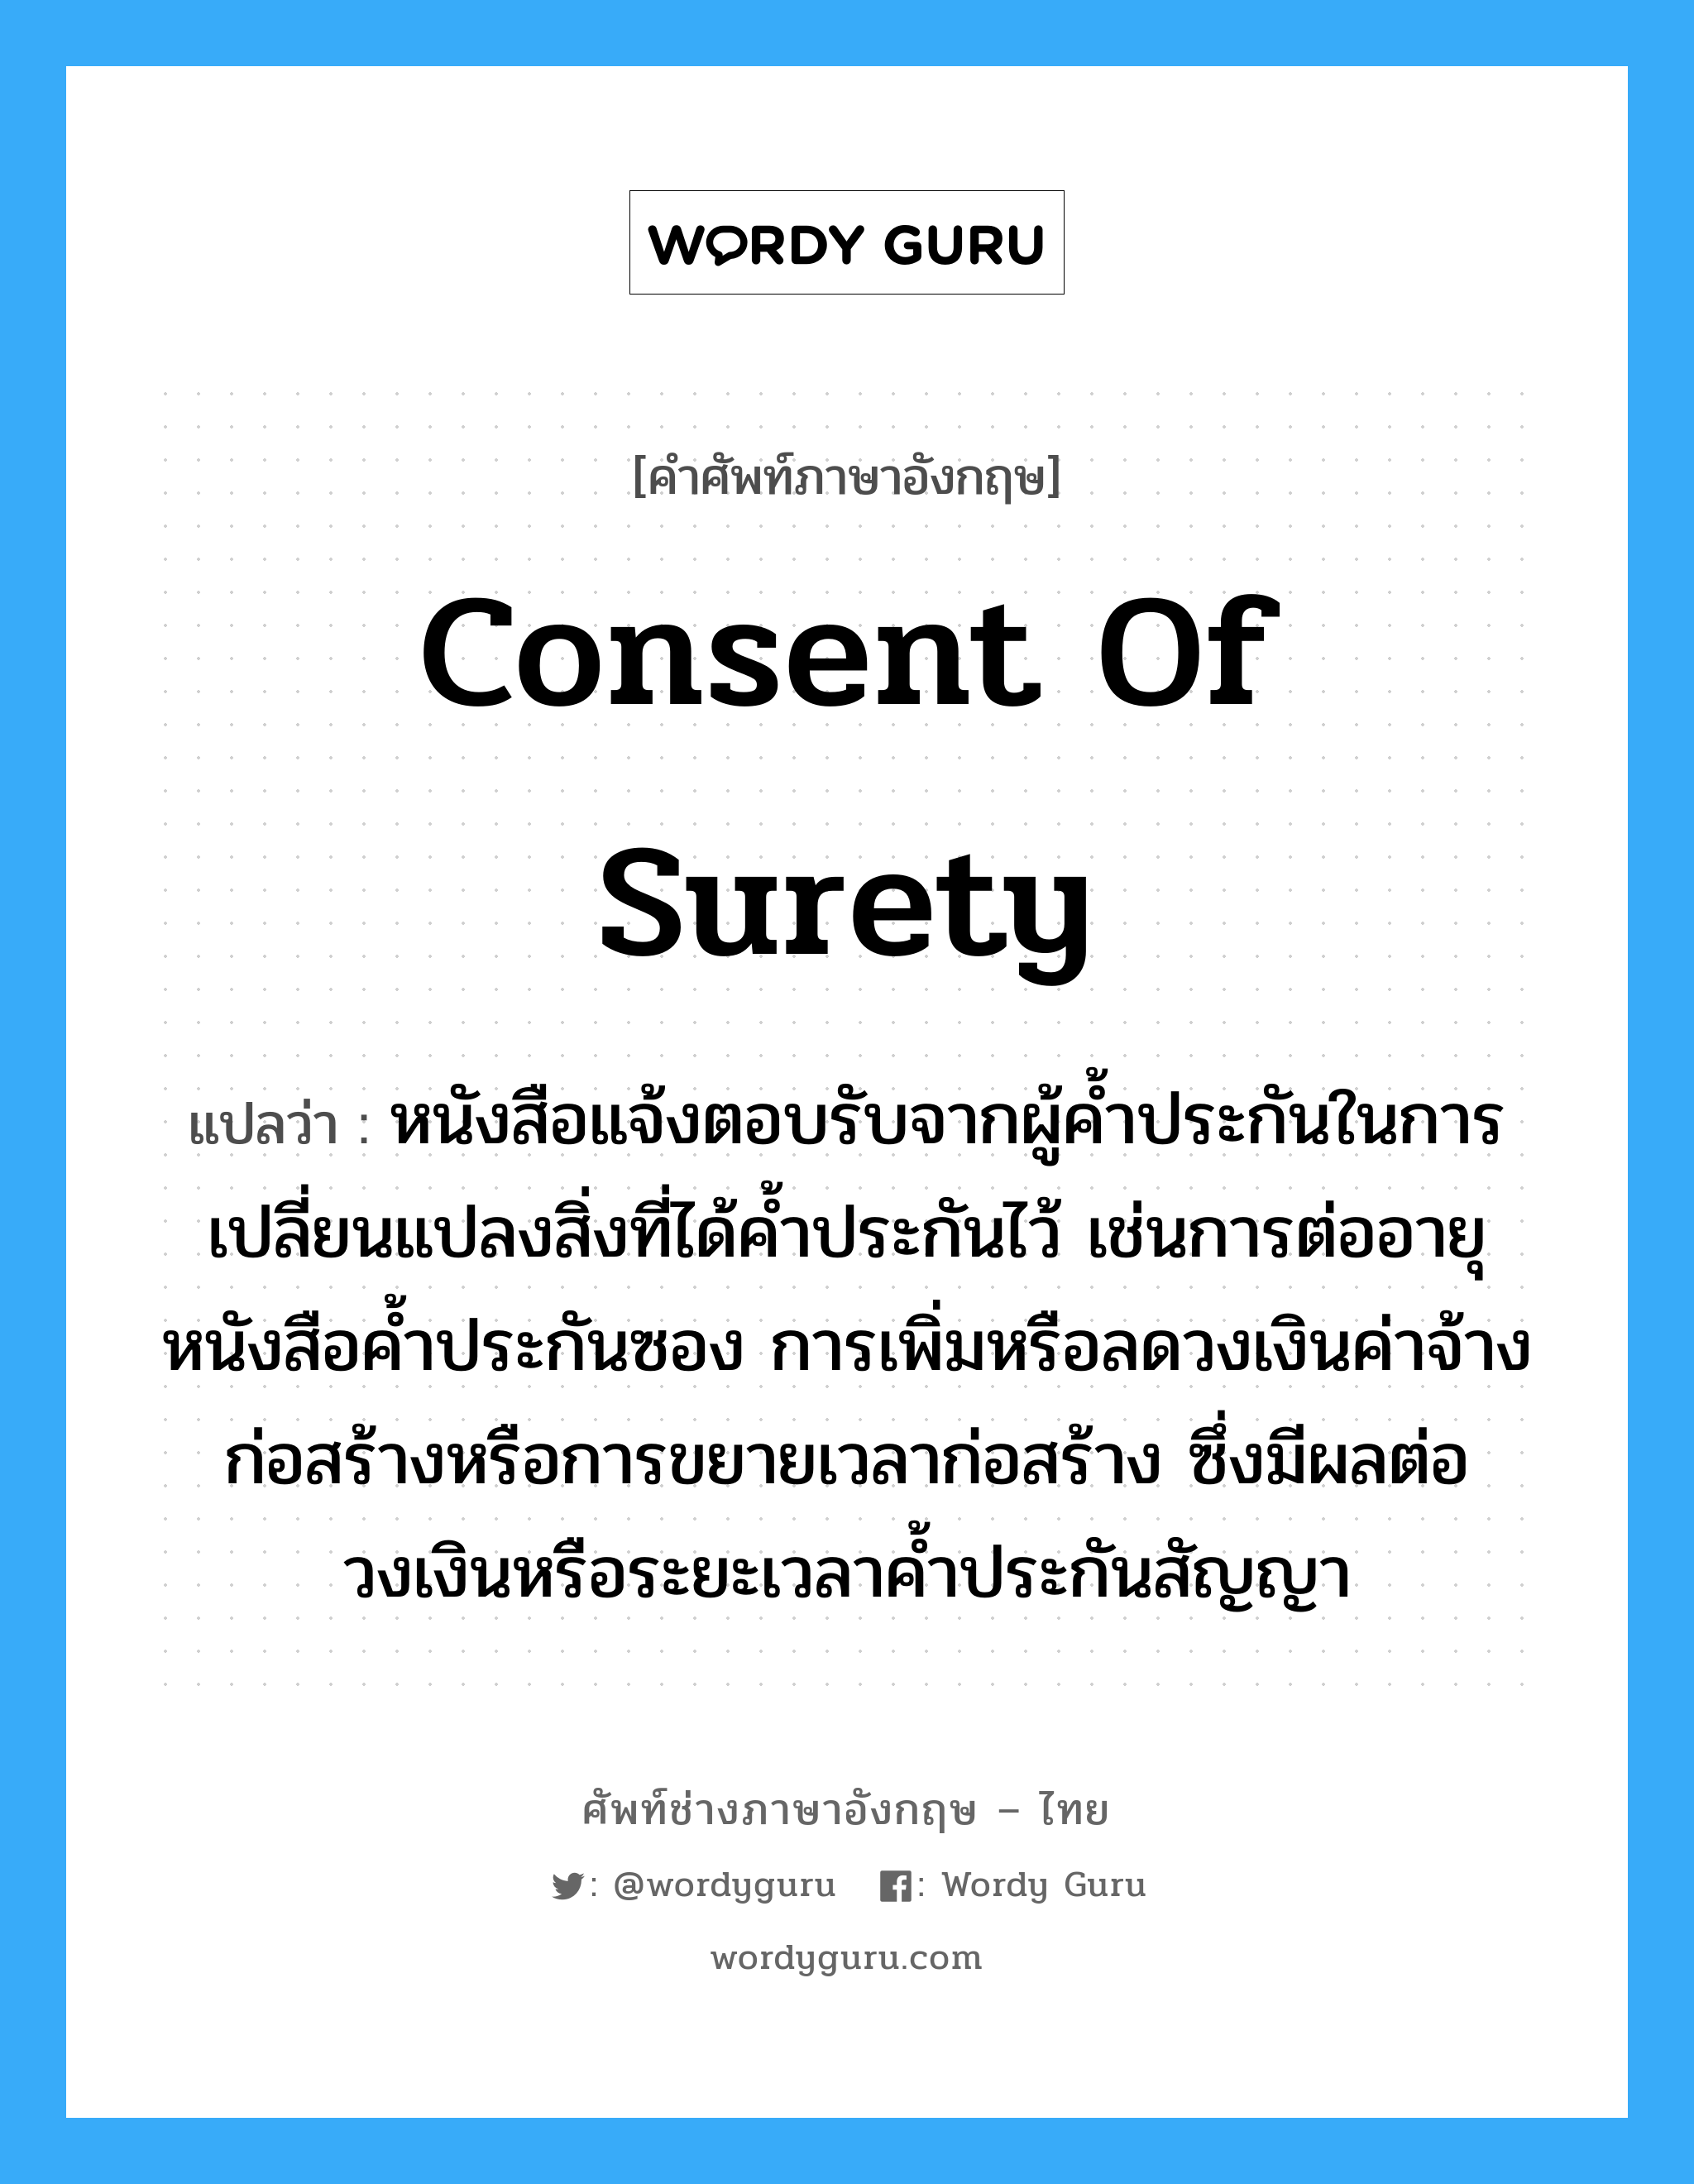 Consent of Surety แปลว่า?, คำศัพท์ช่างภาษาอังกฤษ - ไทย Consent of Surety คำศัพท์ภาษาอังกฤษ Consent of Surety แปลว่า หนังสือแจ้งตอบรับจากผู้ค้ำประกันในการเปลี่ยนแปลงสิ่งที่ได้ค้ำประกันไว้ เช่นการต่ออายุหนังสือค้ำประกันซอง การเพิ่มหรือลดวงเงินค่าจ้างก่อสร้างหรือการขยายเวลาก่อสร้าง ซึ่งมีผลต่อวงเงินหรือระยะเวลาค้ำประกันสัญญา